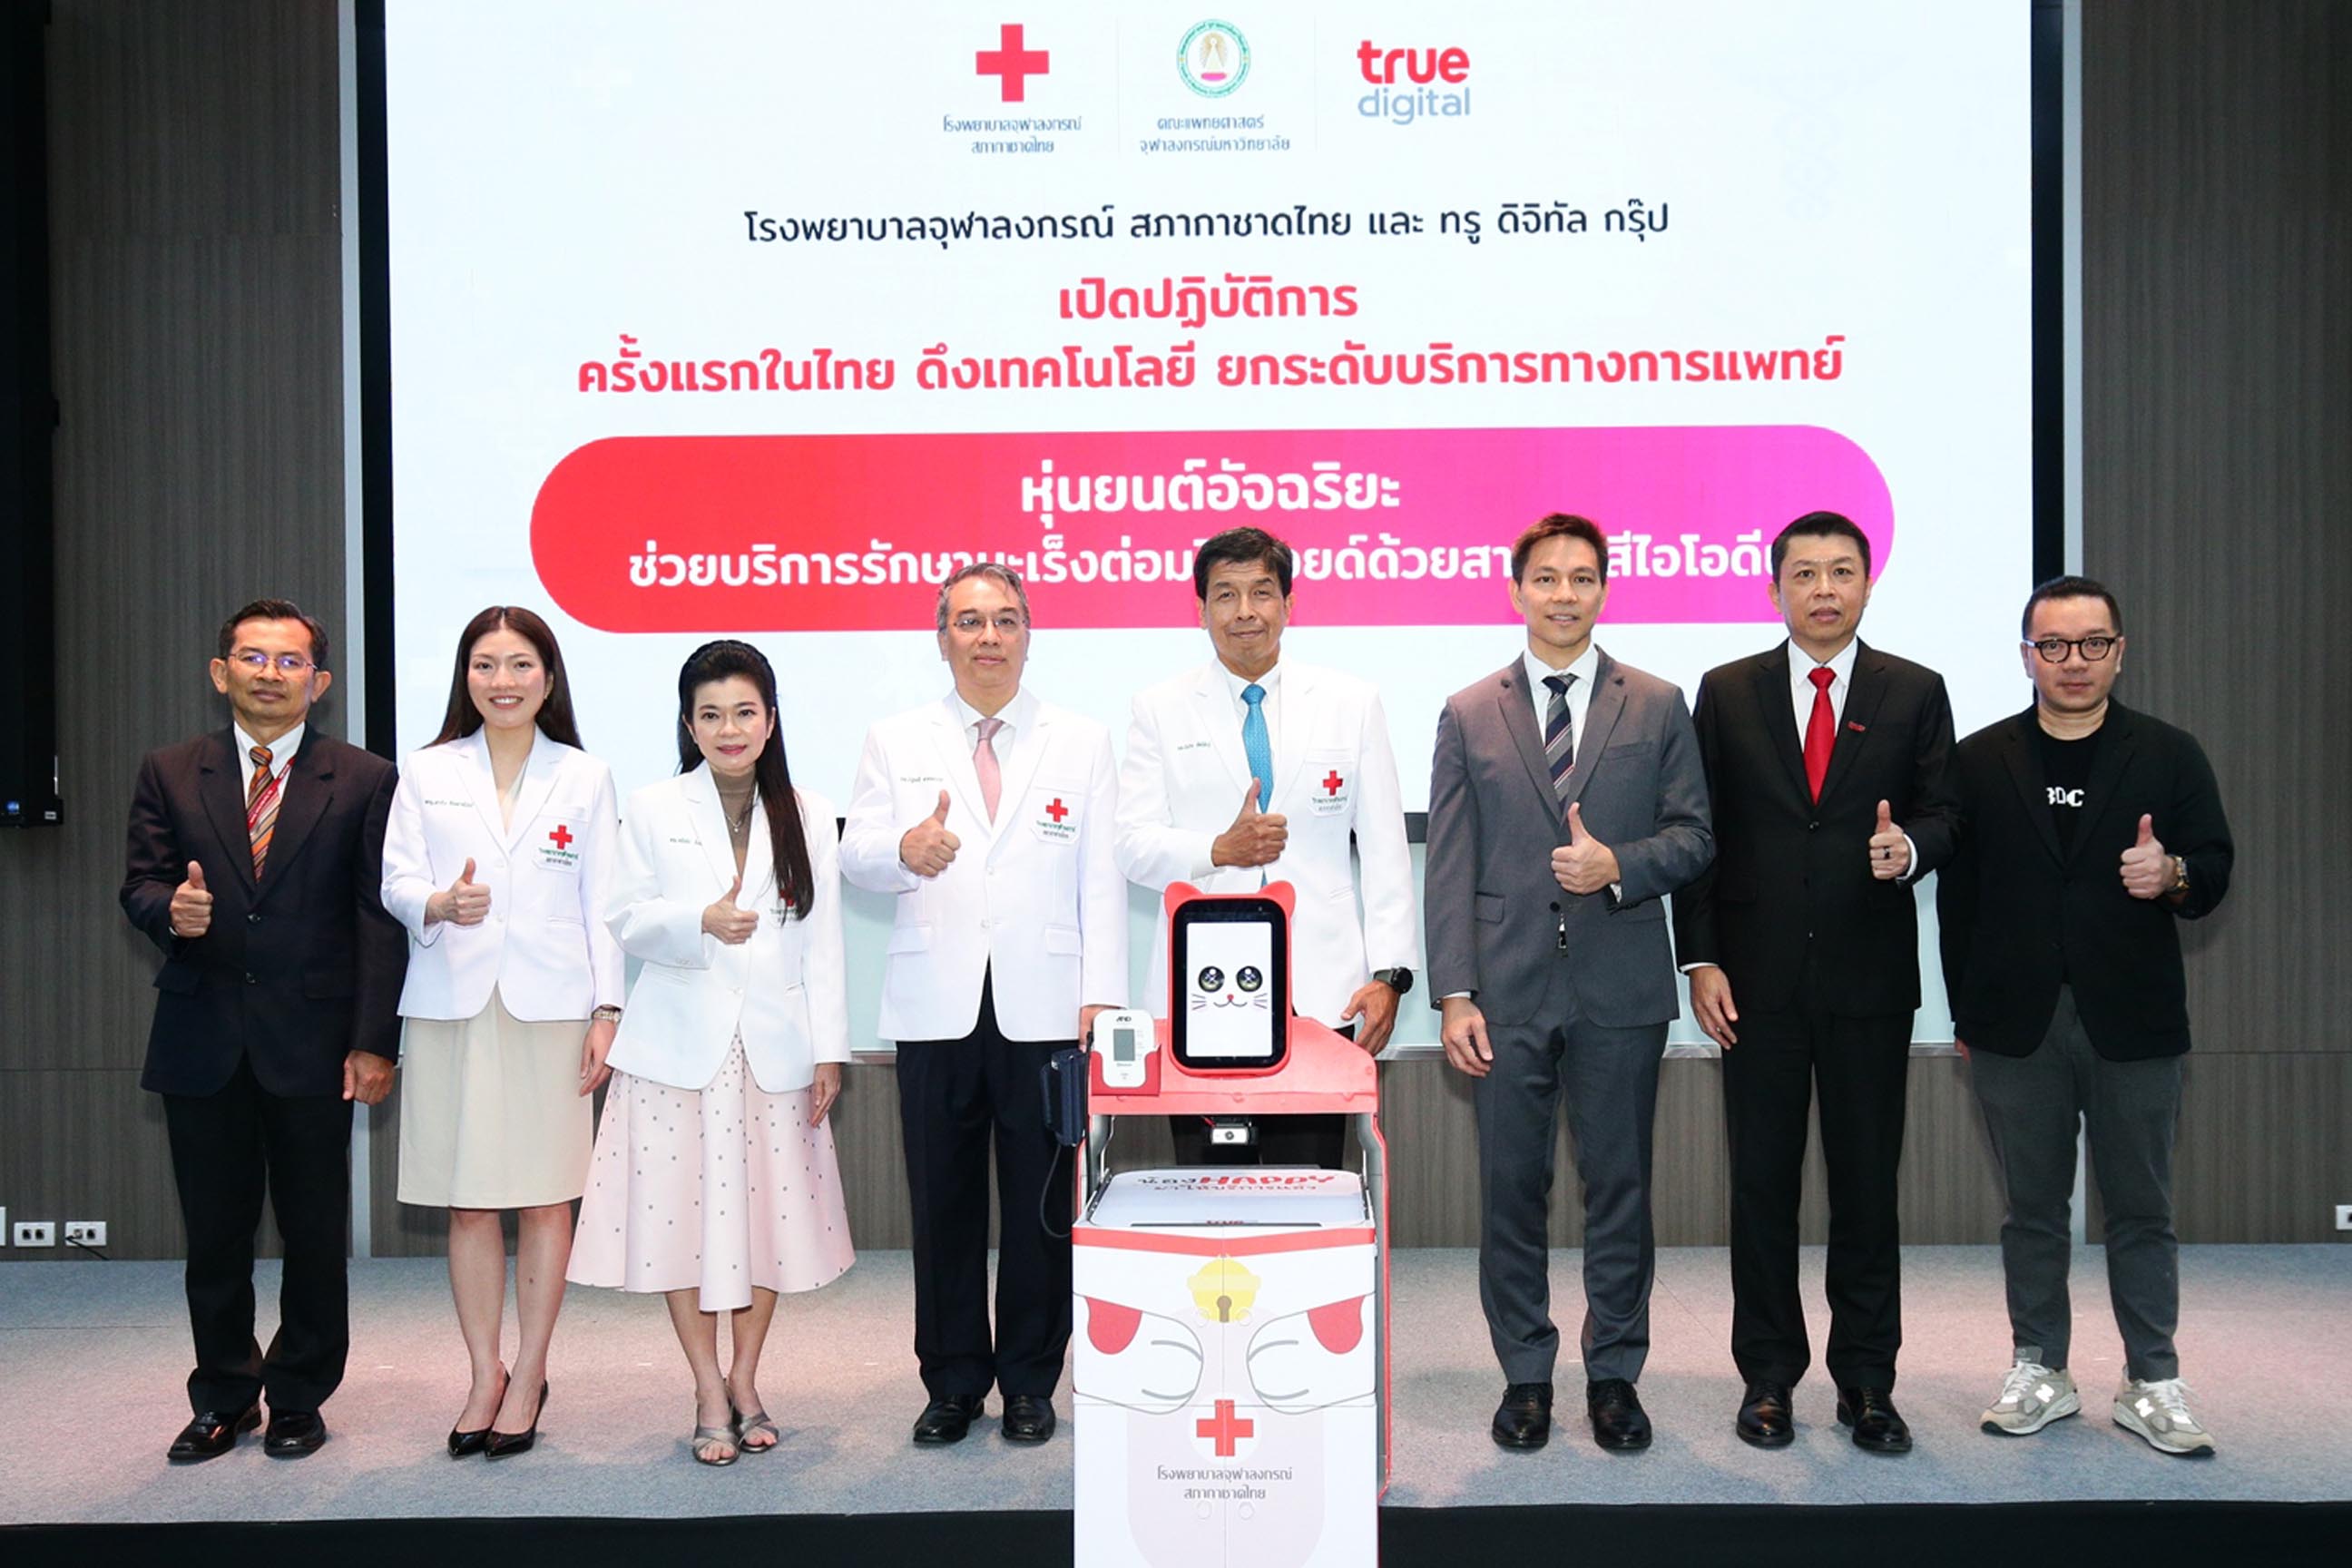 ครั้งแรกในไทย! ทรู ดิจิทัล ส่งนวัตกรรมหุ่นยนต์ช่วยแพทย์ รพ.จุฬาลงกรณ์ฯ ให้บริการรักษามะเร็งต่อมไทรอยด์ด้วยสารรังสีไอโอดีน